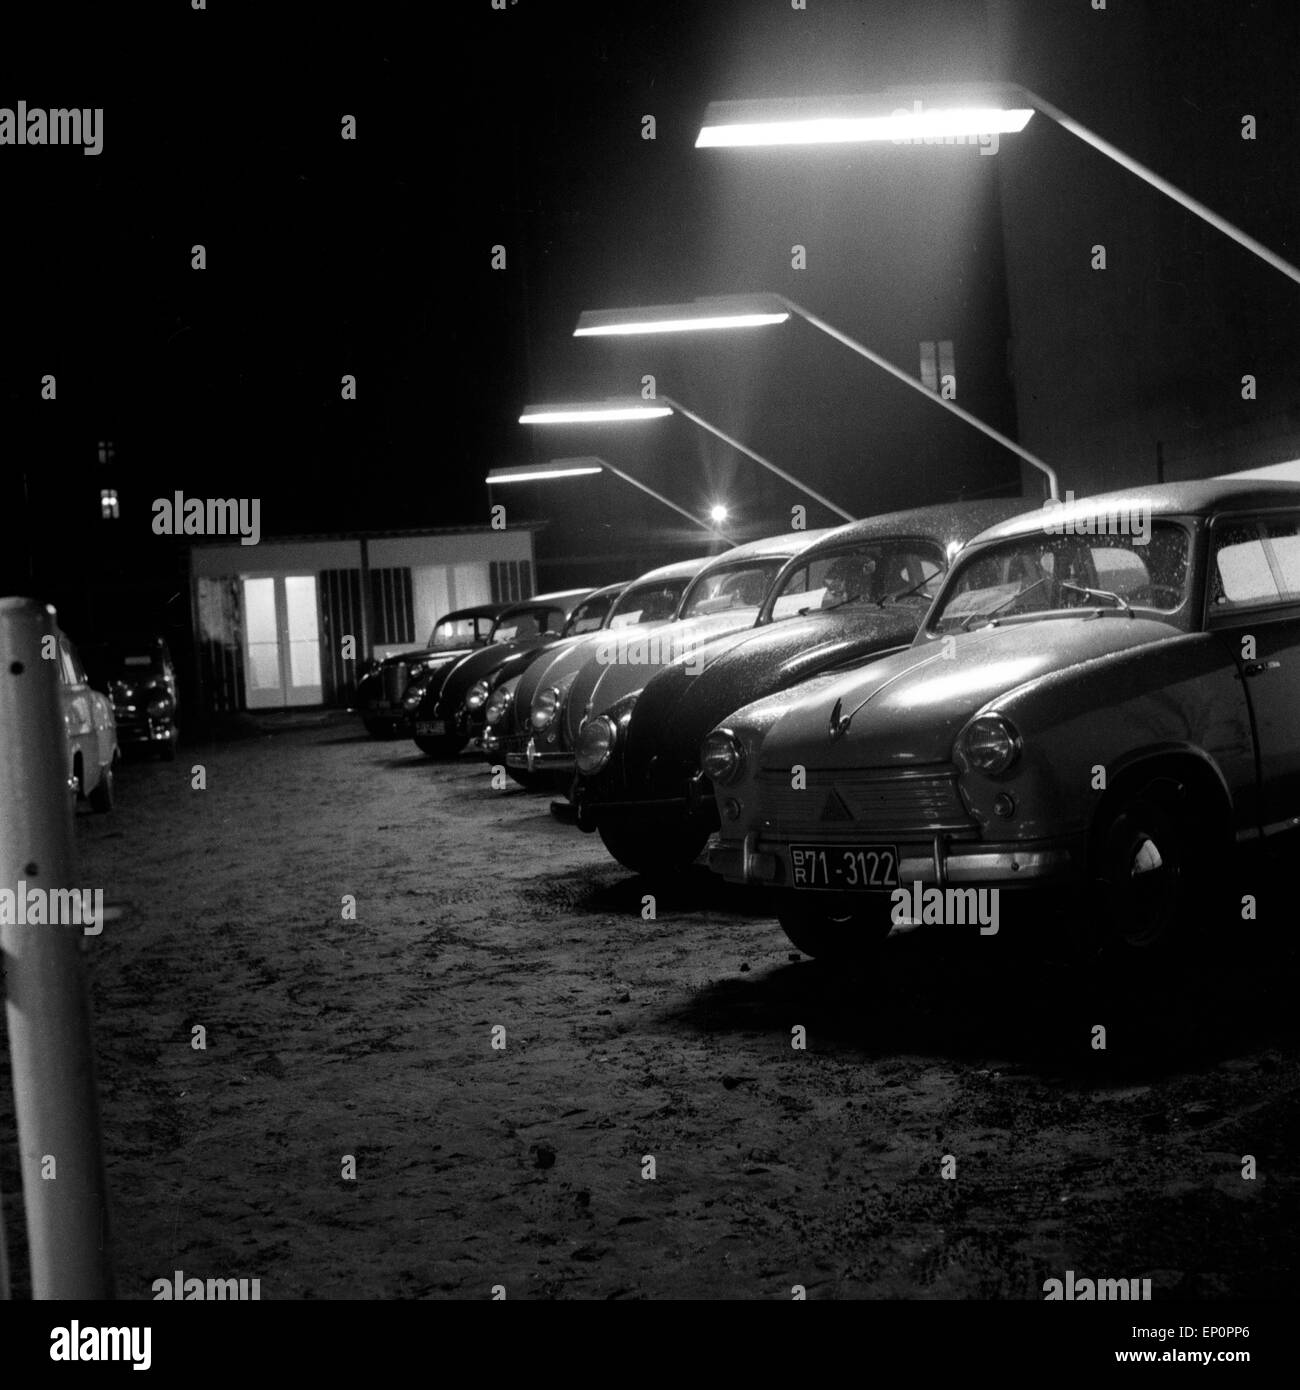 Das Angebot eines Gebrauchtwagenhändlers in der Weidenallee in Hamburg bei Nacht, 1954. Cars at a second hand car shop by night Stock Photo